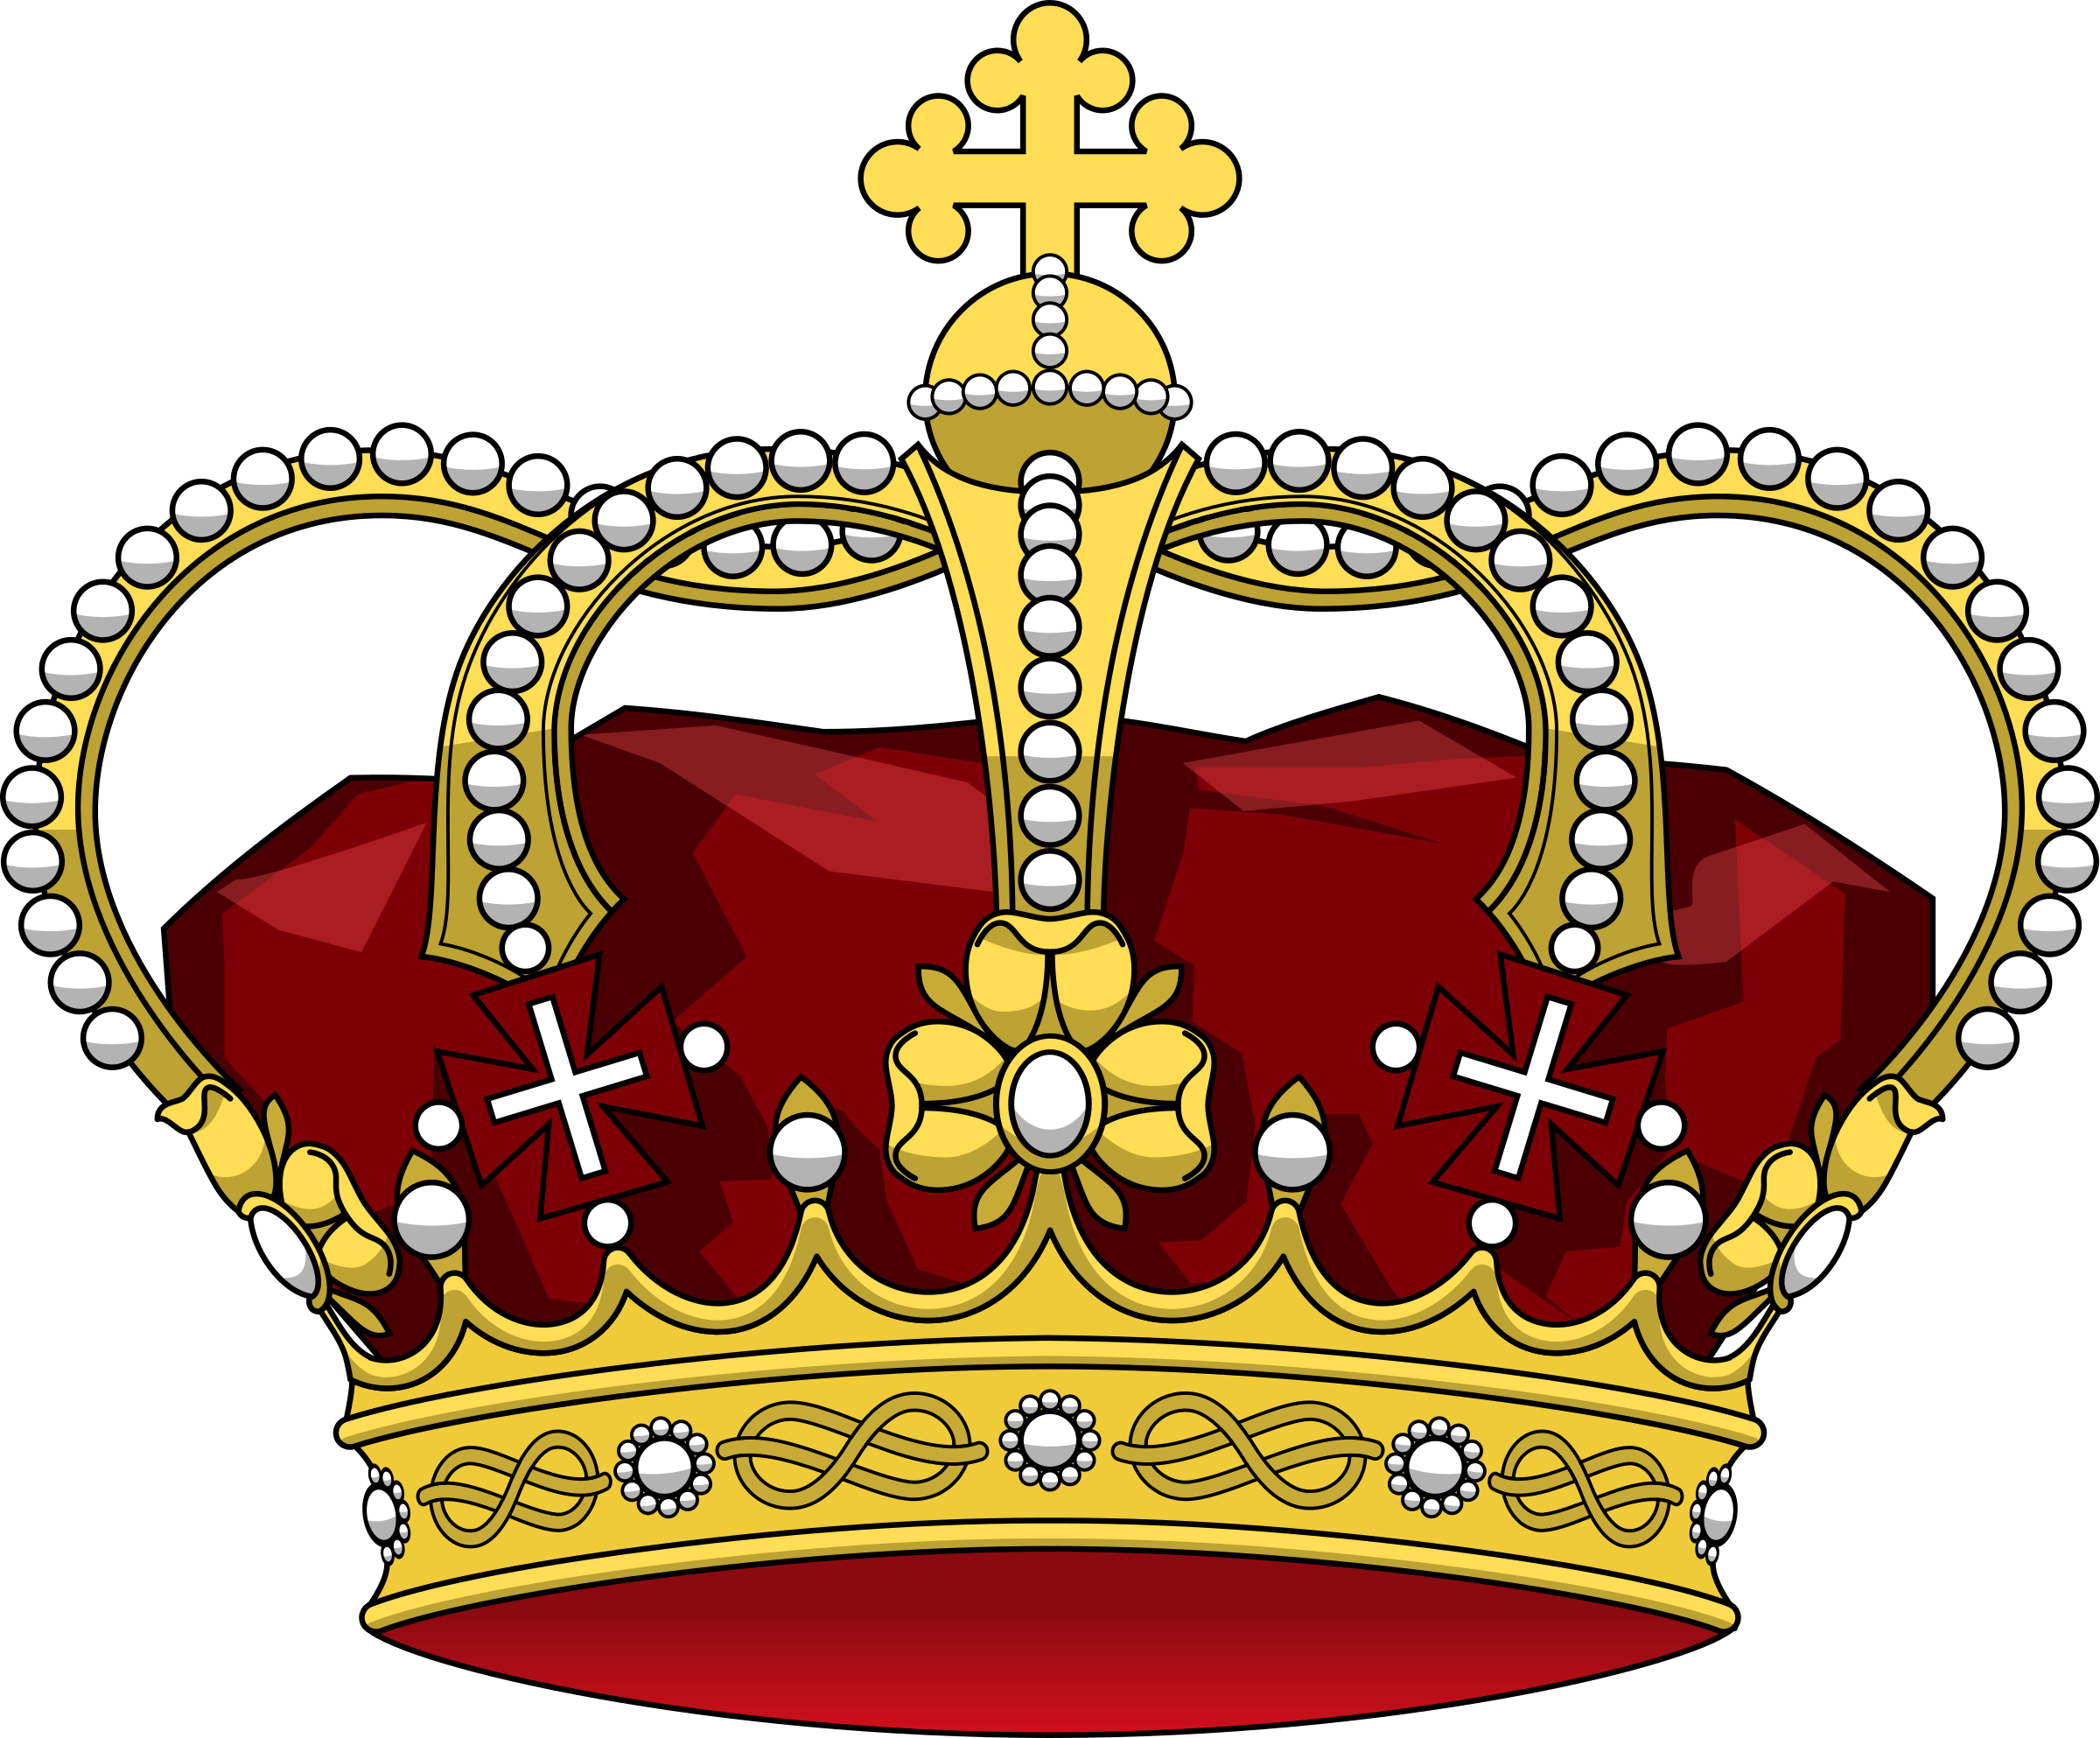 Царские элементы. Корона монарха Король. Геральдическая корона императора. Корона короля Дании Кристиана IV. Корона Король King.